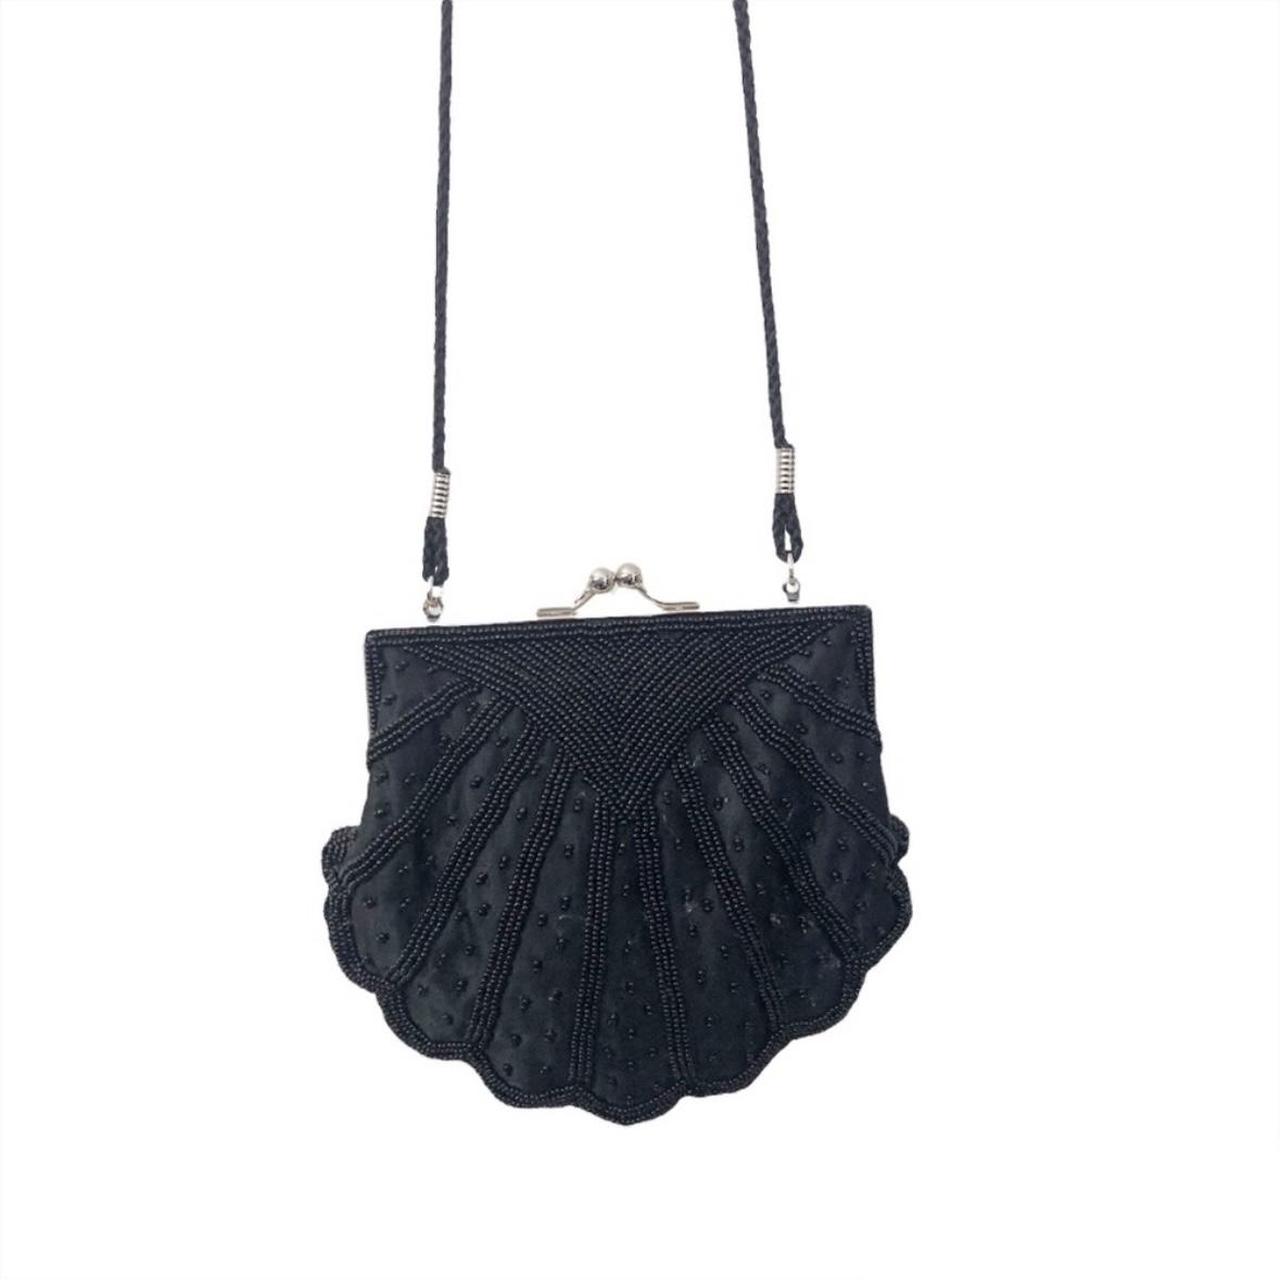 La Regale Women's Bag - Black